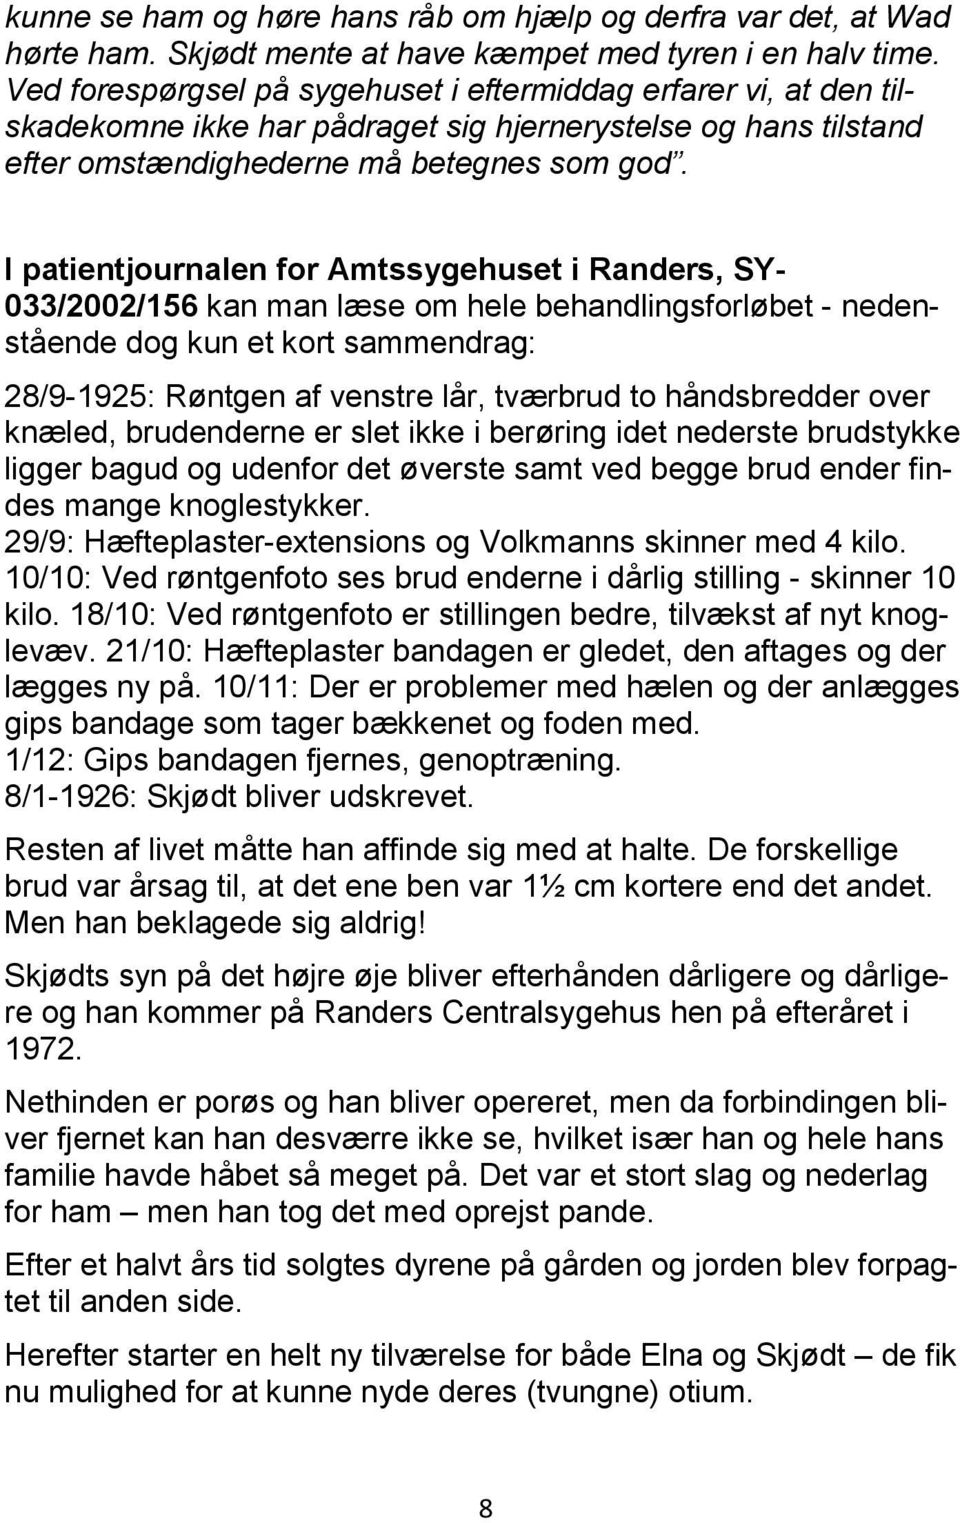 I patientjournalen for Amtssygehuset i Randers, SY- 033/2002/156 kan man læse om hele behandlingsforløbet - nedenstående dog kun et kort sammendrag: 28/9-1925: Røntgen af venstre lår, tværbrud to